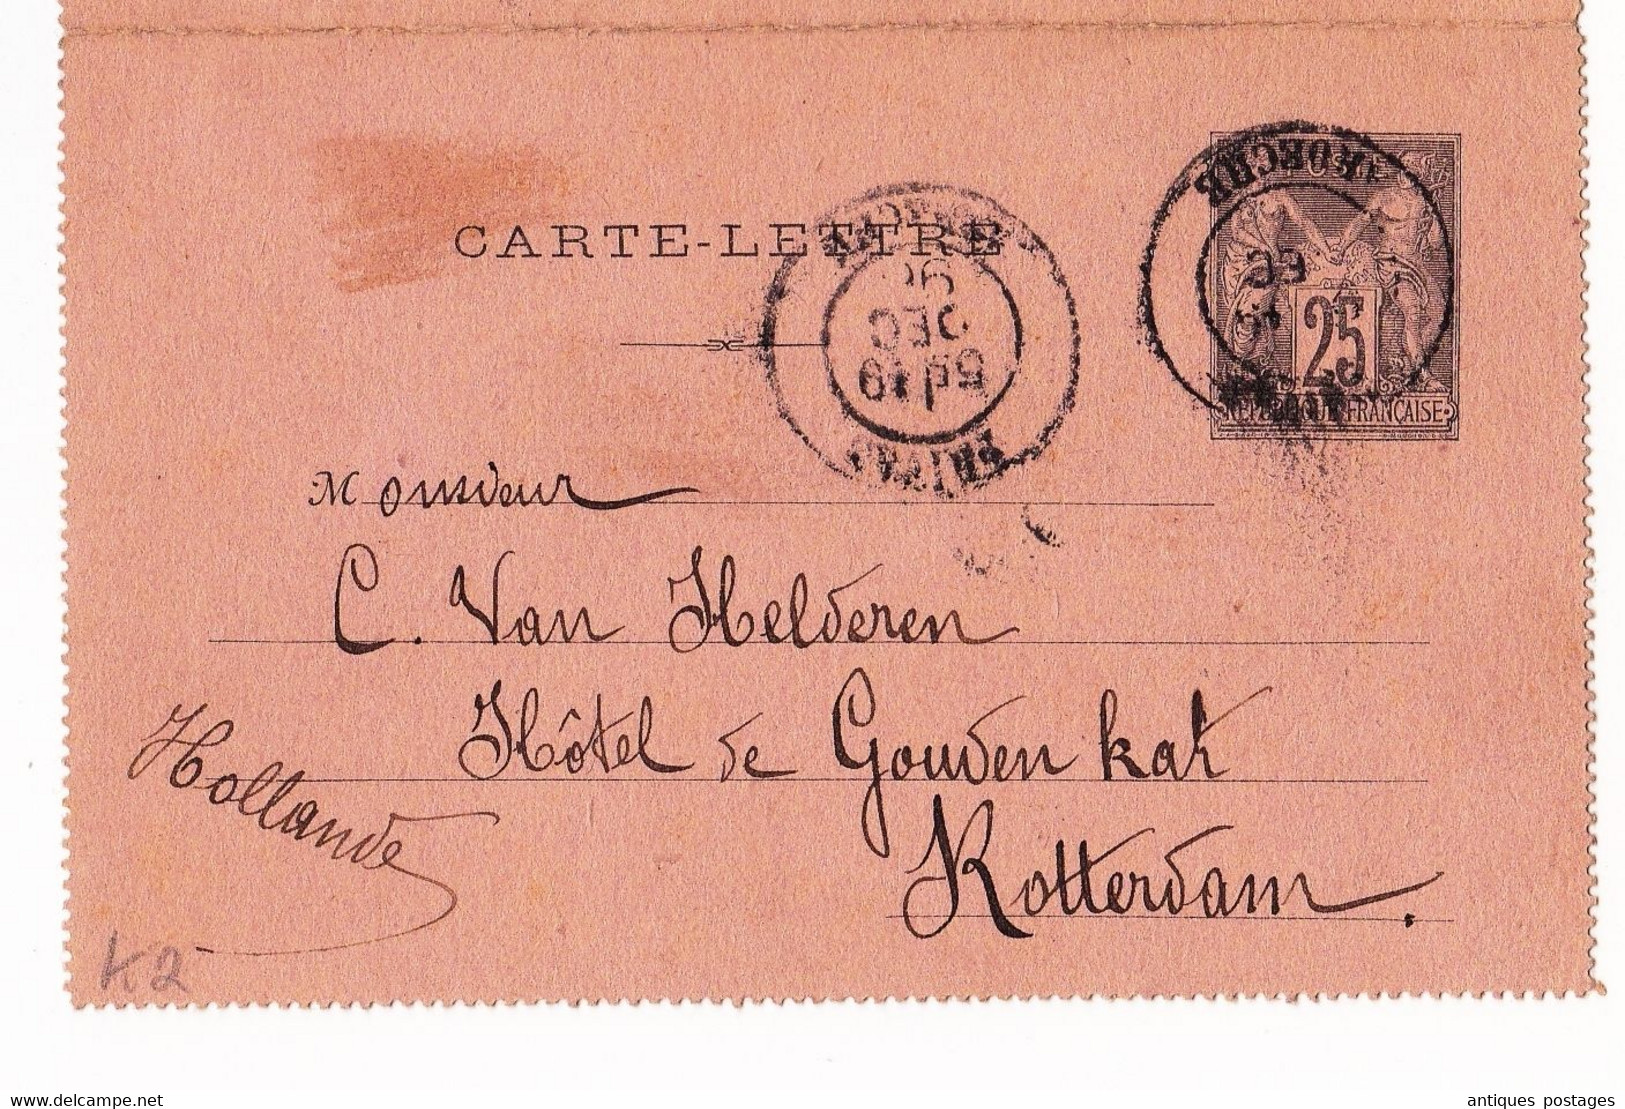 Entier Postal1898 Privas Ardèche Type Sage Rotterdam Hollande Pays Bas Philatélie Timbre - Cartes-lettres